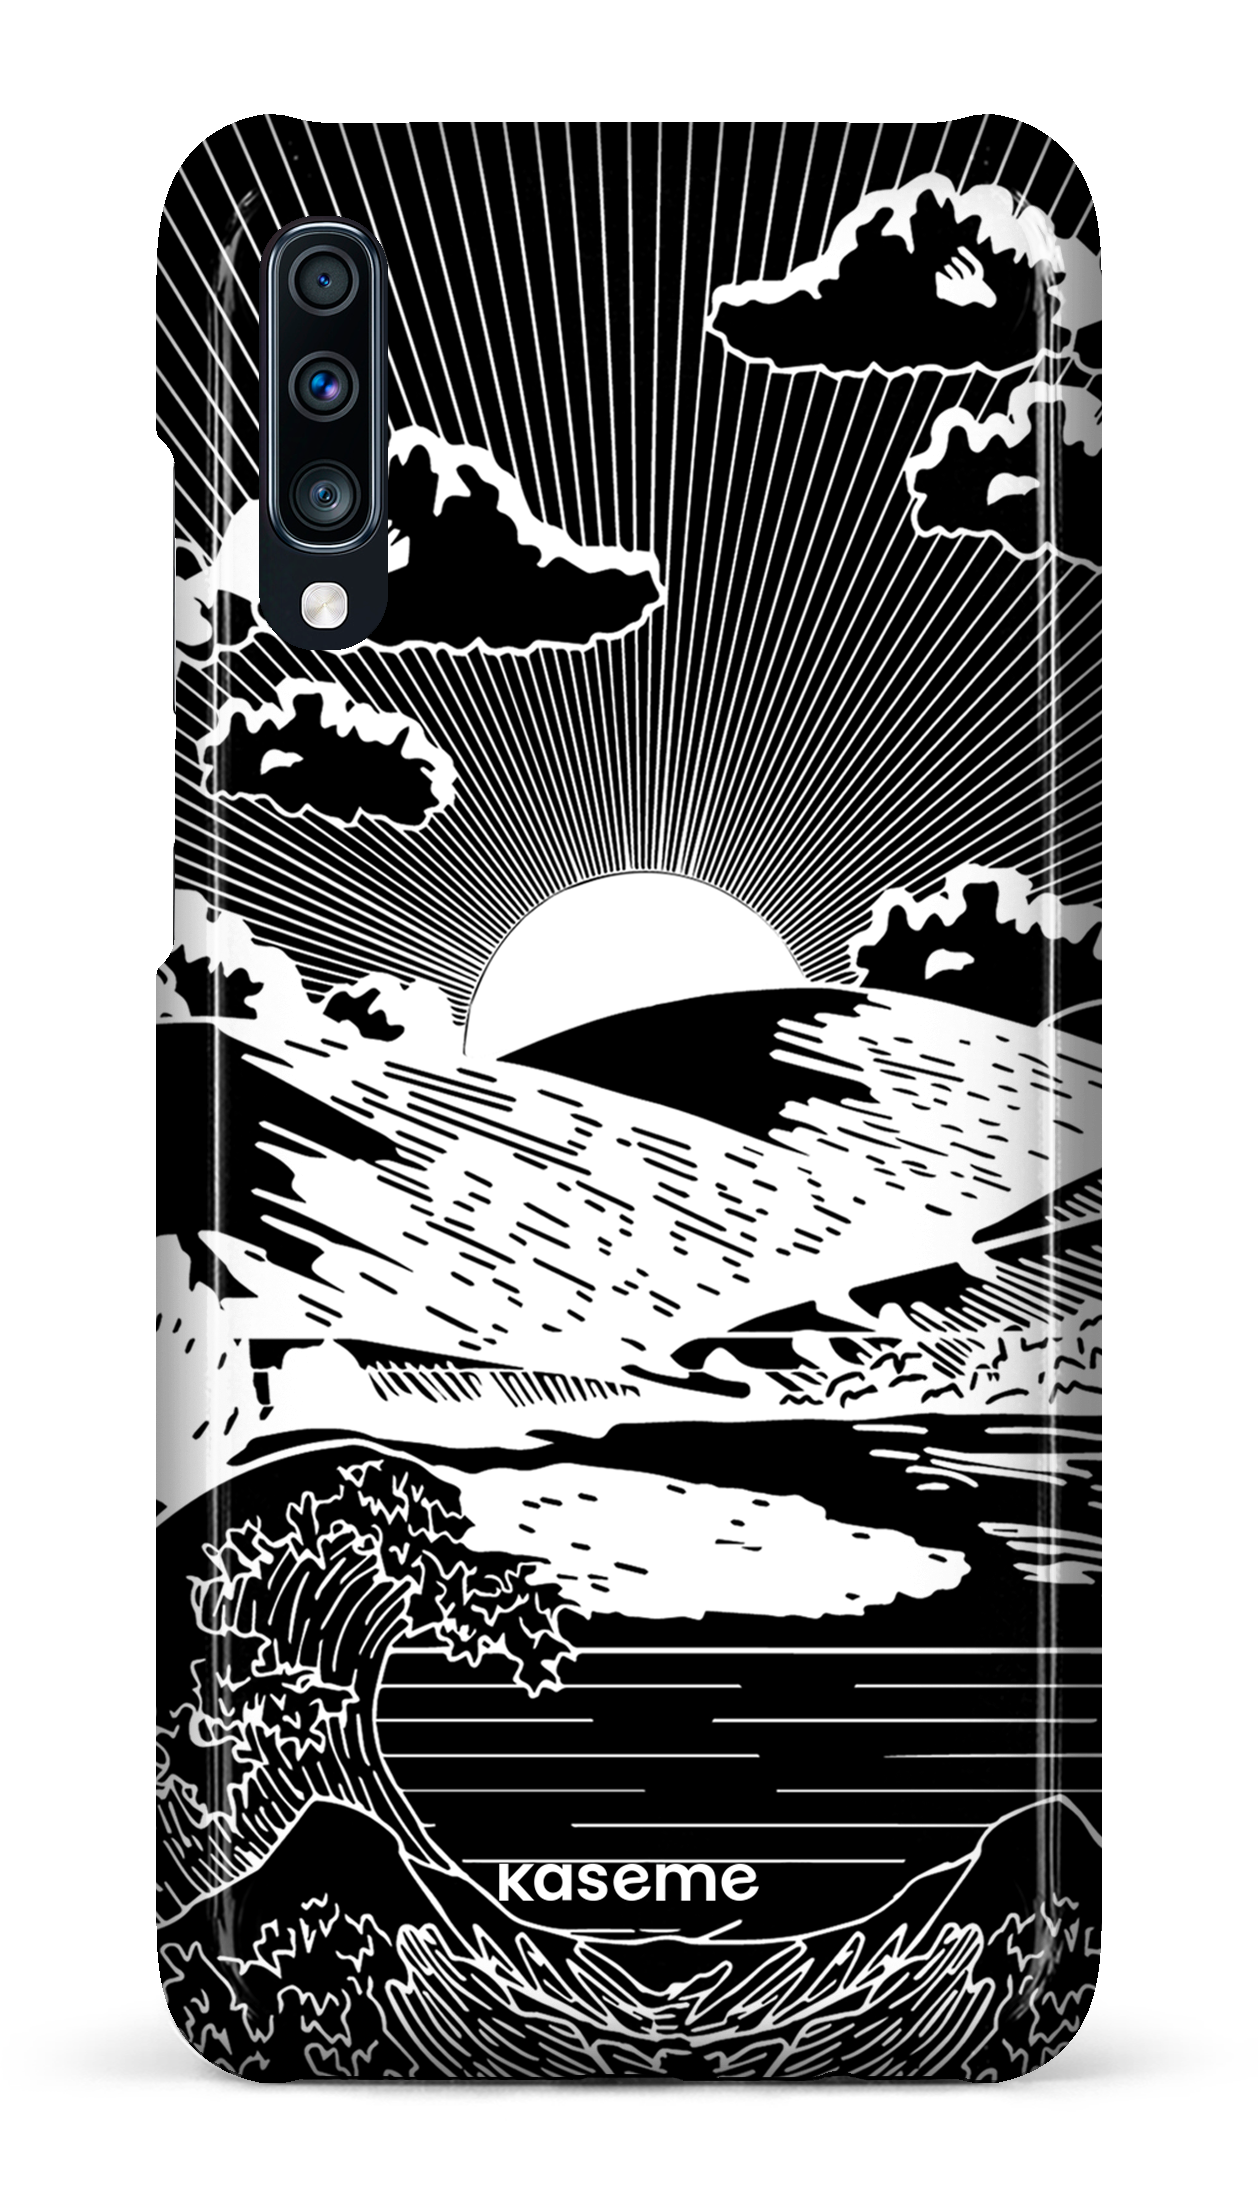 Sunbath black - Galaxy A70